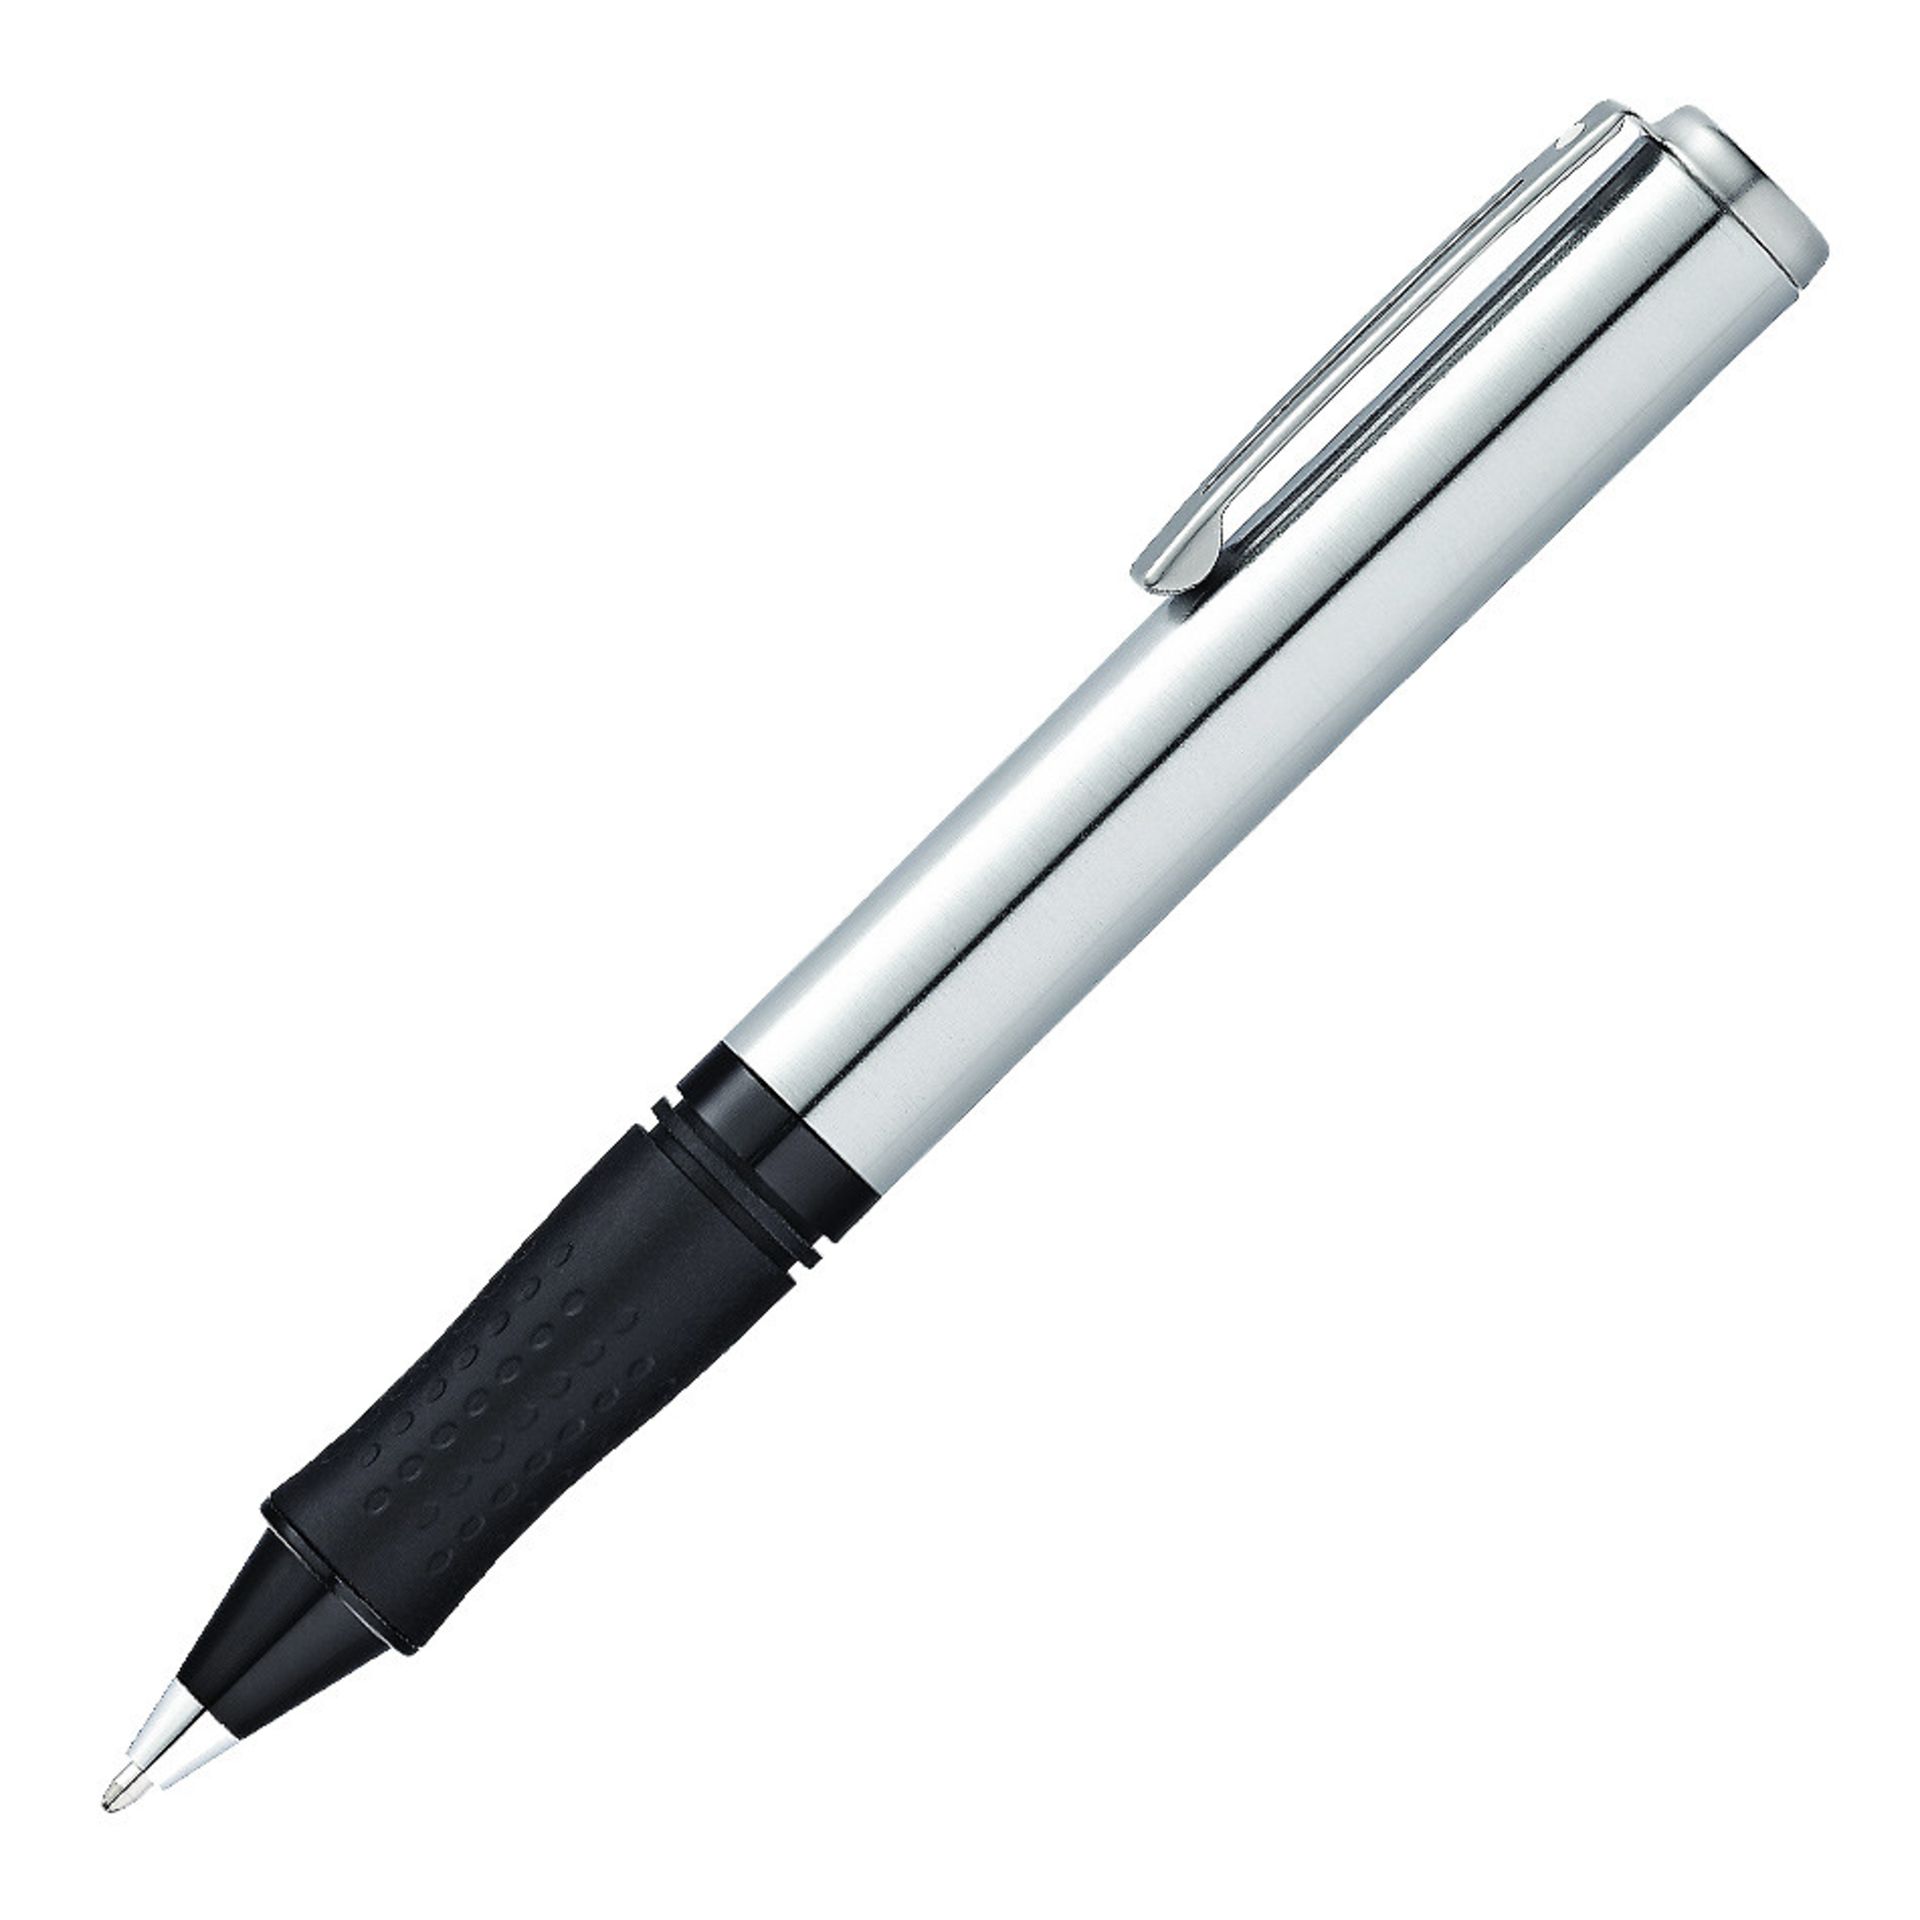 V Brand New Sheaffer Brushed Chrome Rubber Grip Ballpoint Pen - ISP £14.99 Cult Pens - In